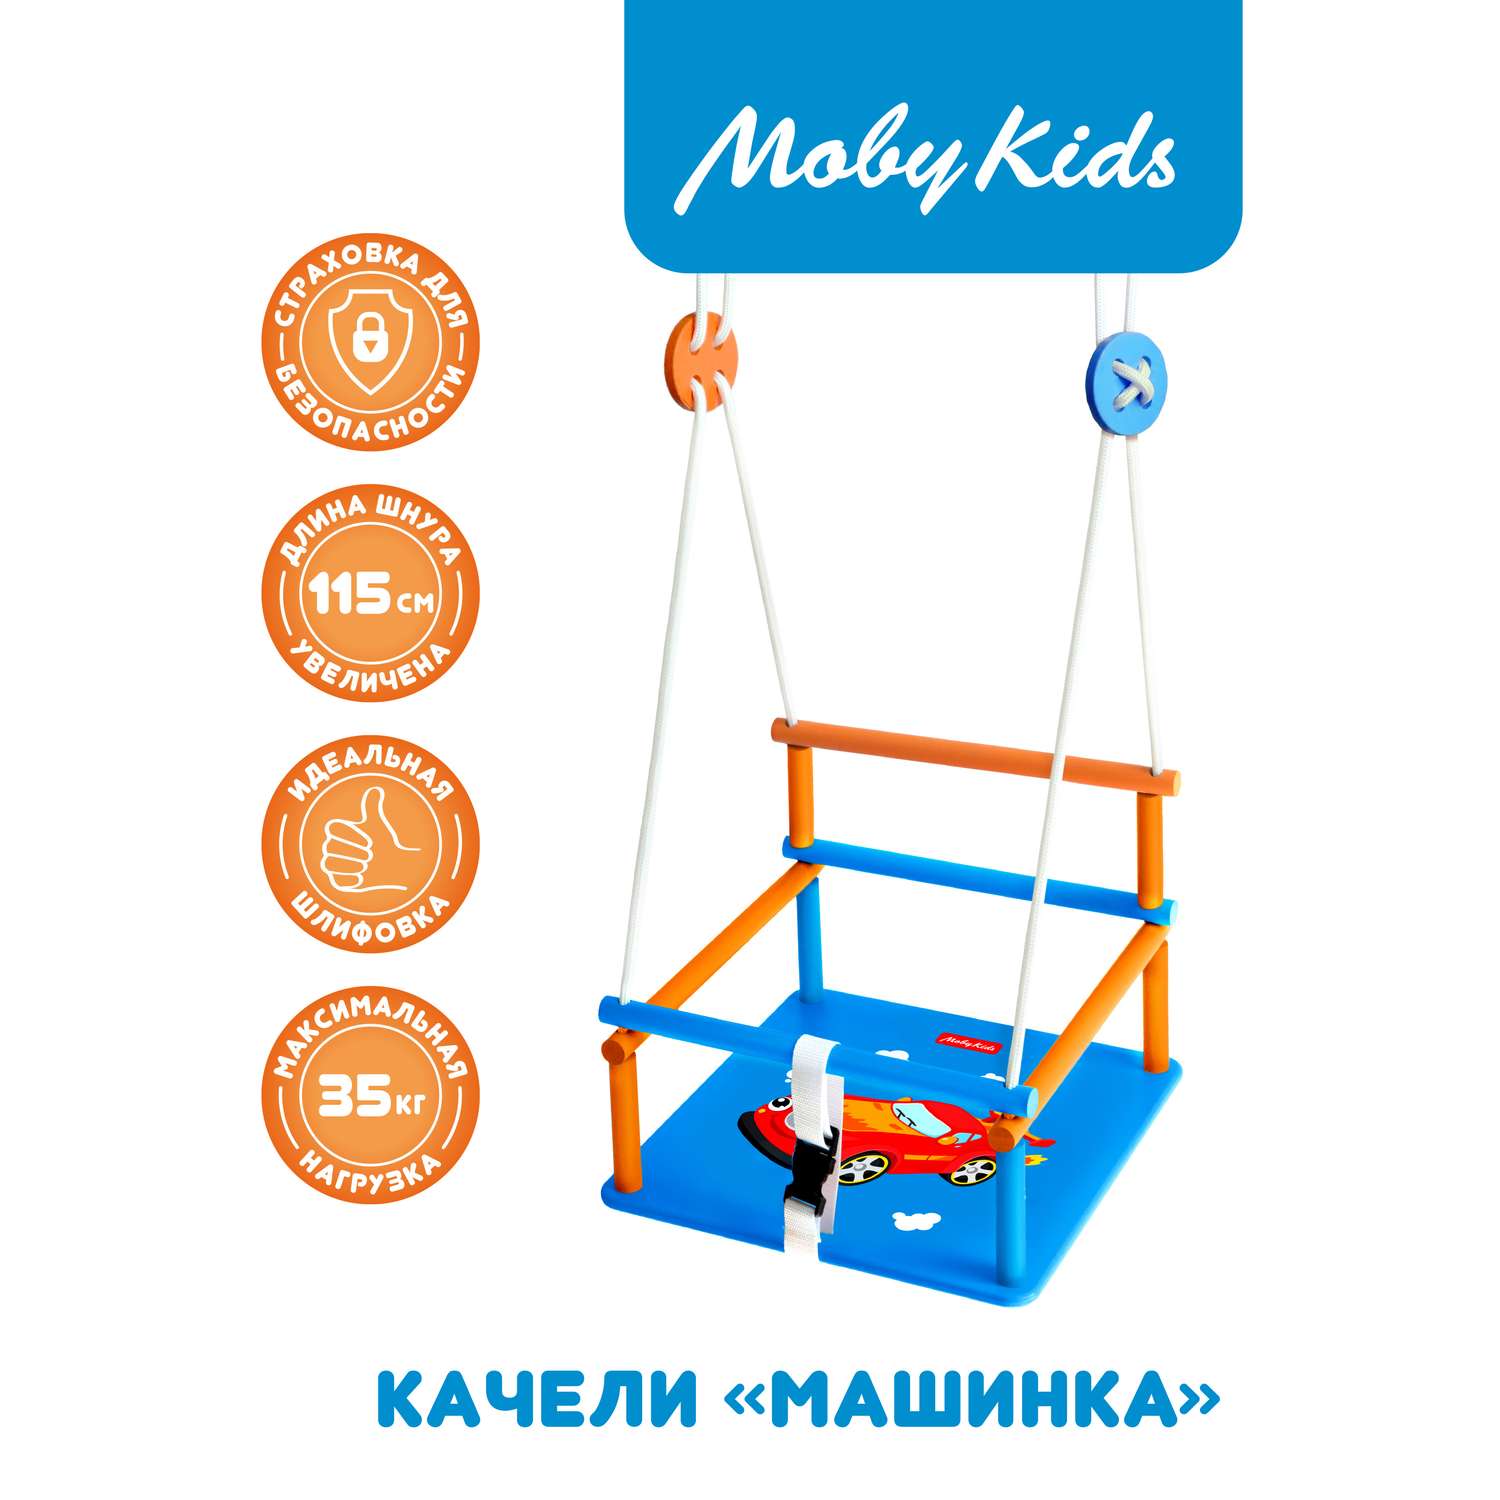 Качели детские деревянные Moby kids для детей малышей с рисунком Машинка - фото 2